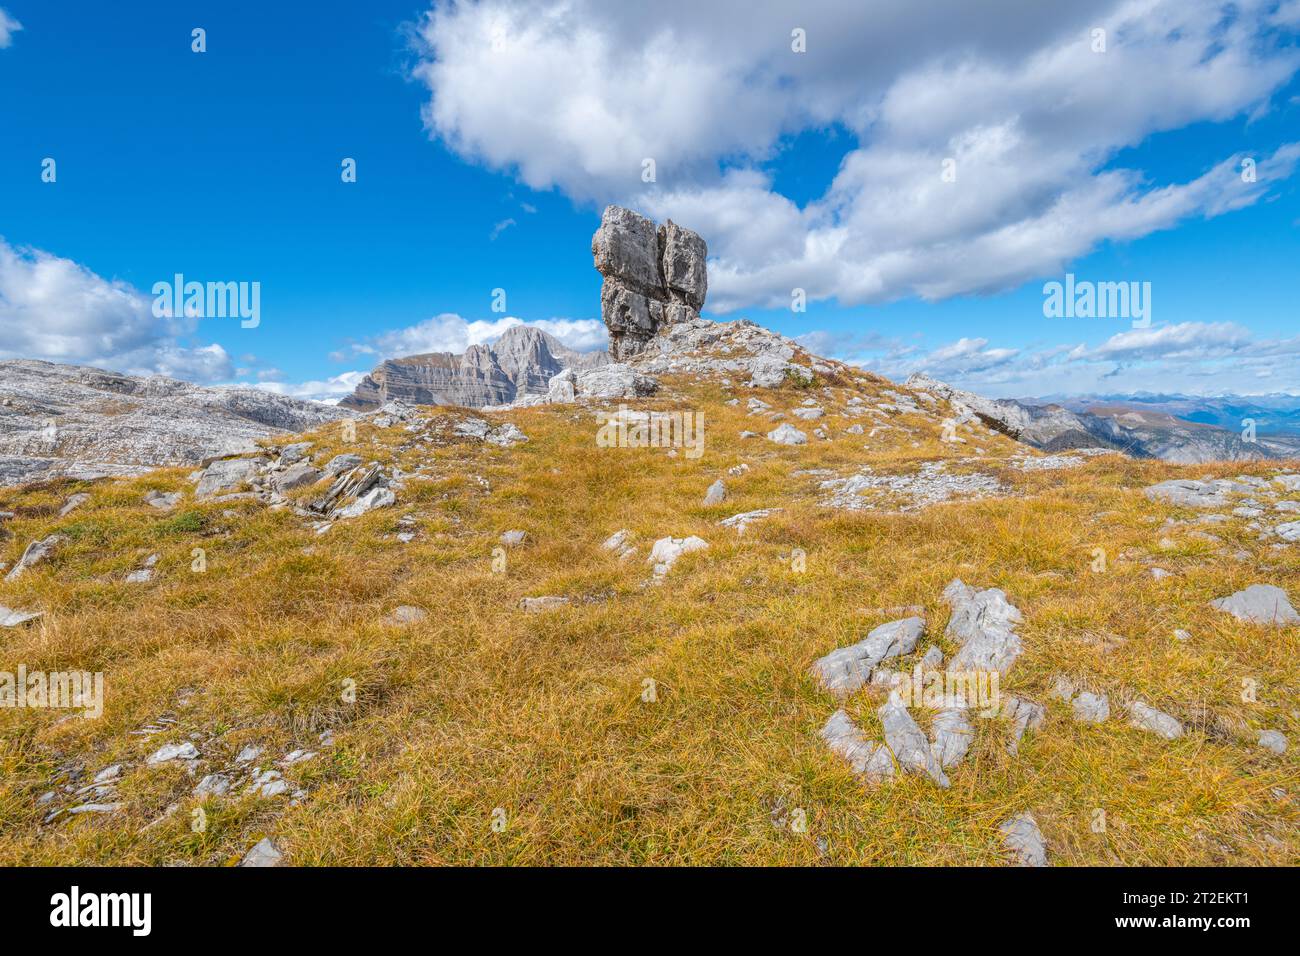 Grand rocher de calcaire autoportant au sommet d'une petite colline couverte d'herbe d'automne brune, contre un ciel bleu avec des nuages Banque D'Images